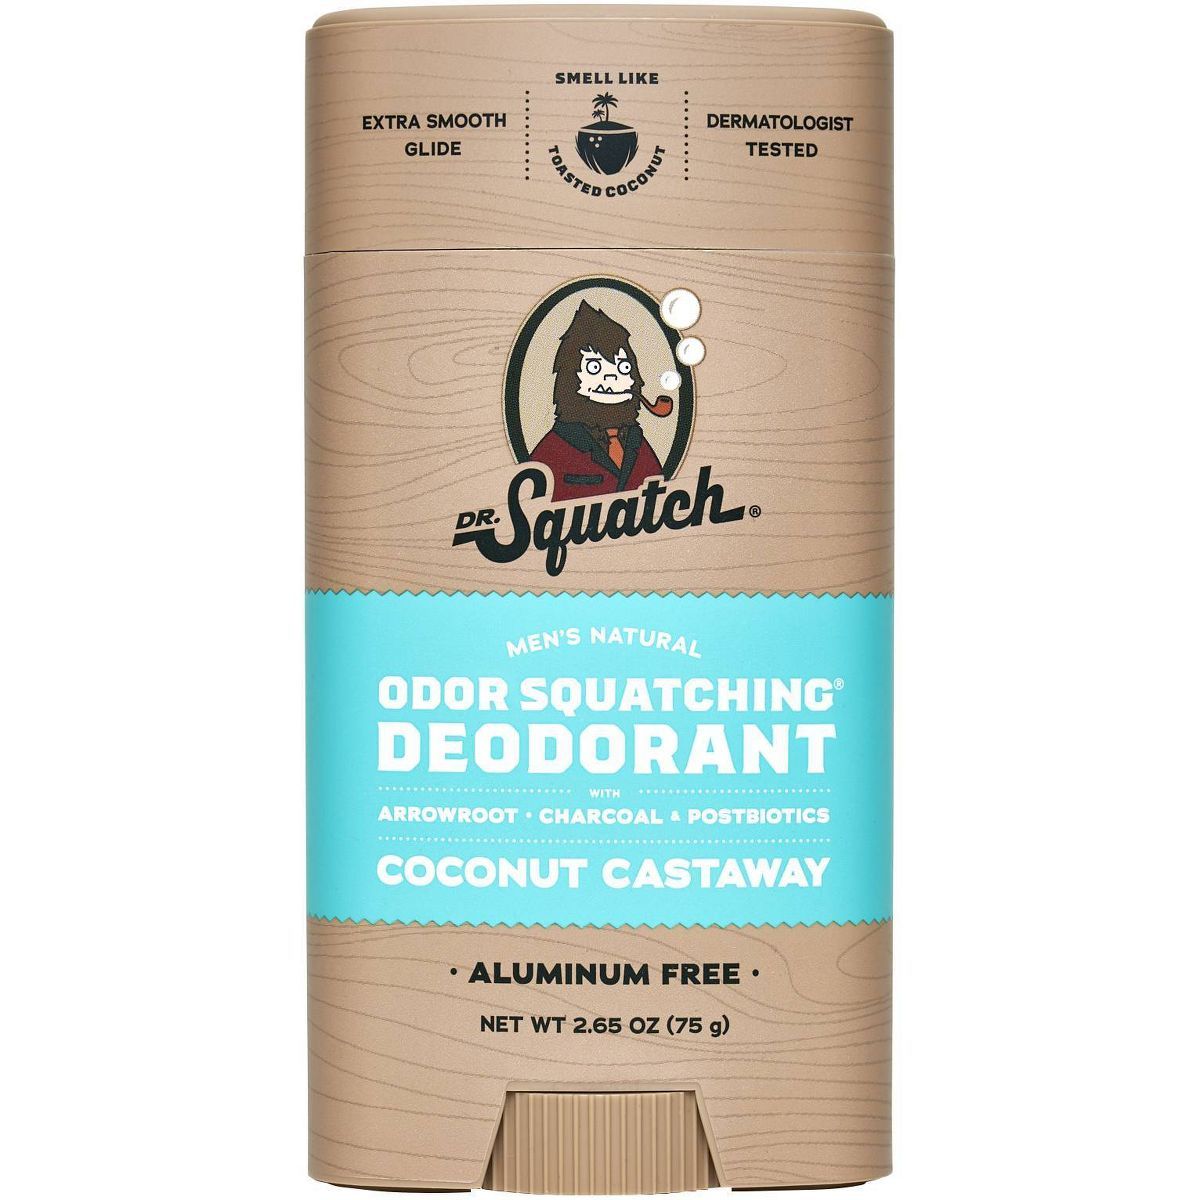 DR. SQUATCH Men's Natural Deodorant - Coconut Castaway - 2.65oz | Target